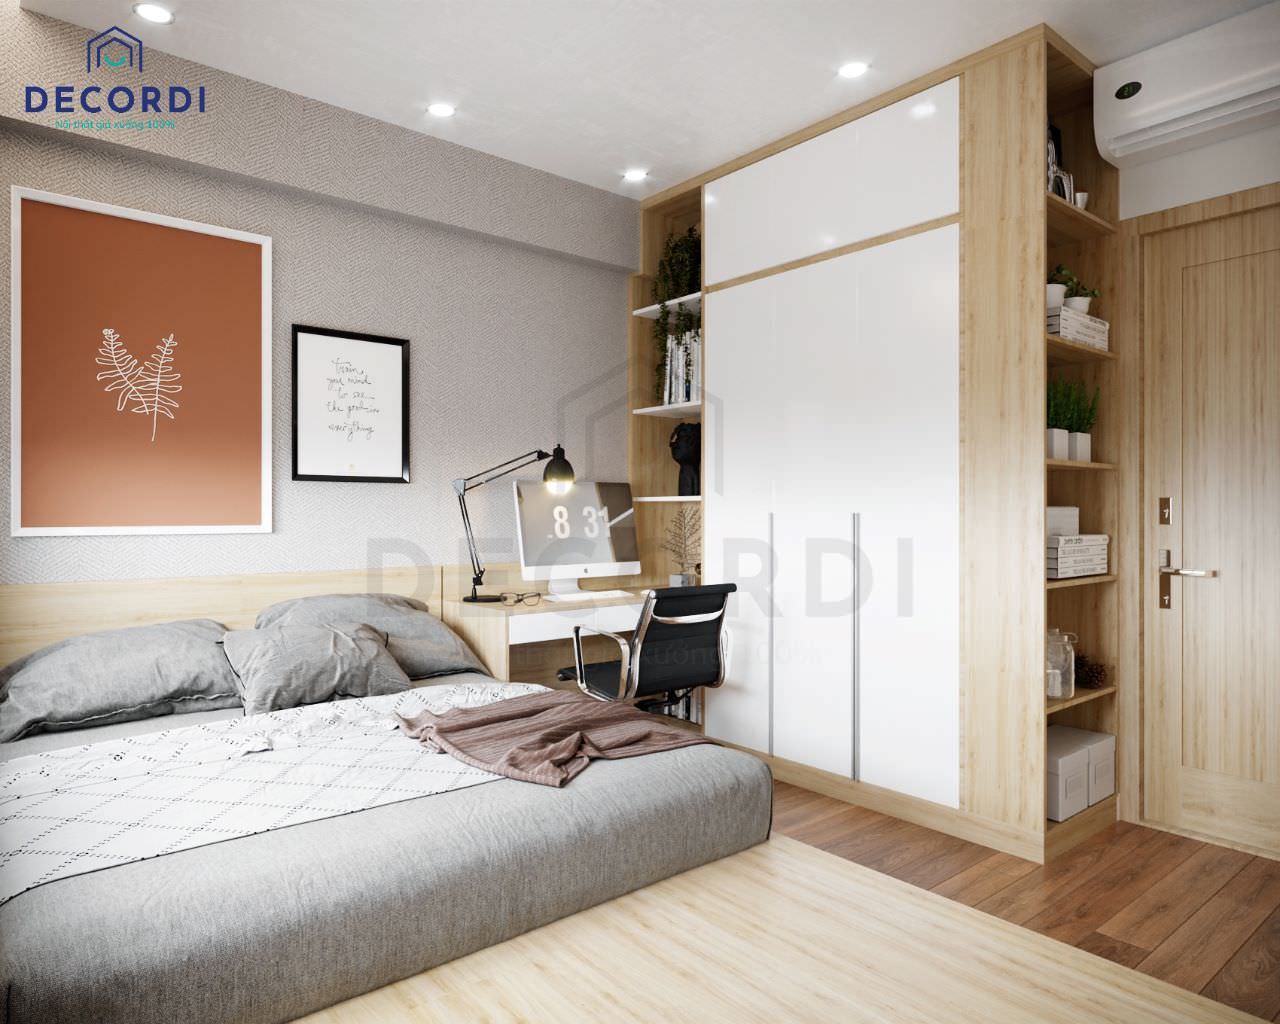 Trang trí phòng ngủ với giấy dán tường màu xám hoạ tiết nổi kết hợp bộ tranh treo tường phong cách tối giản